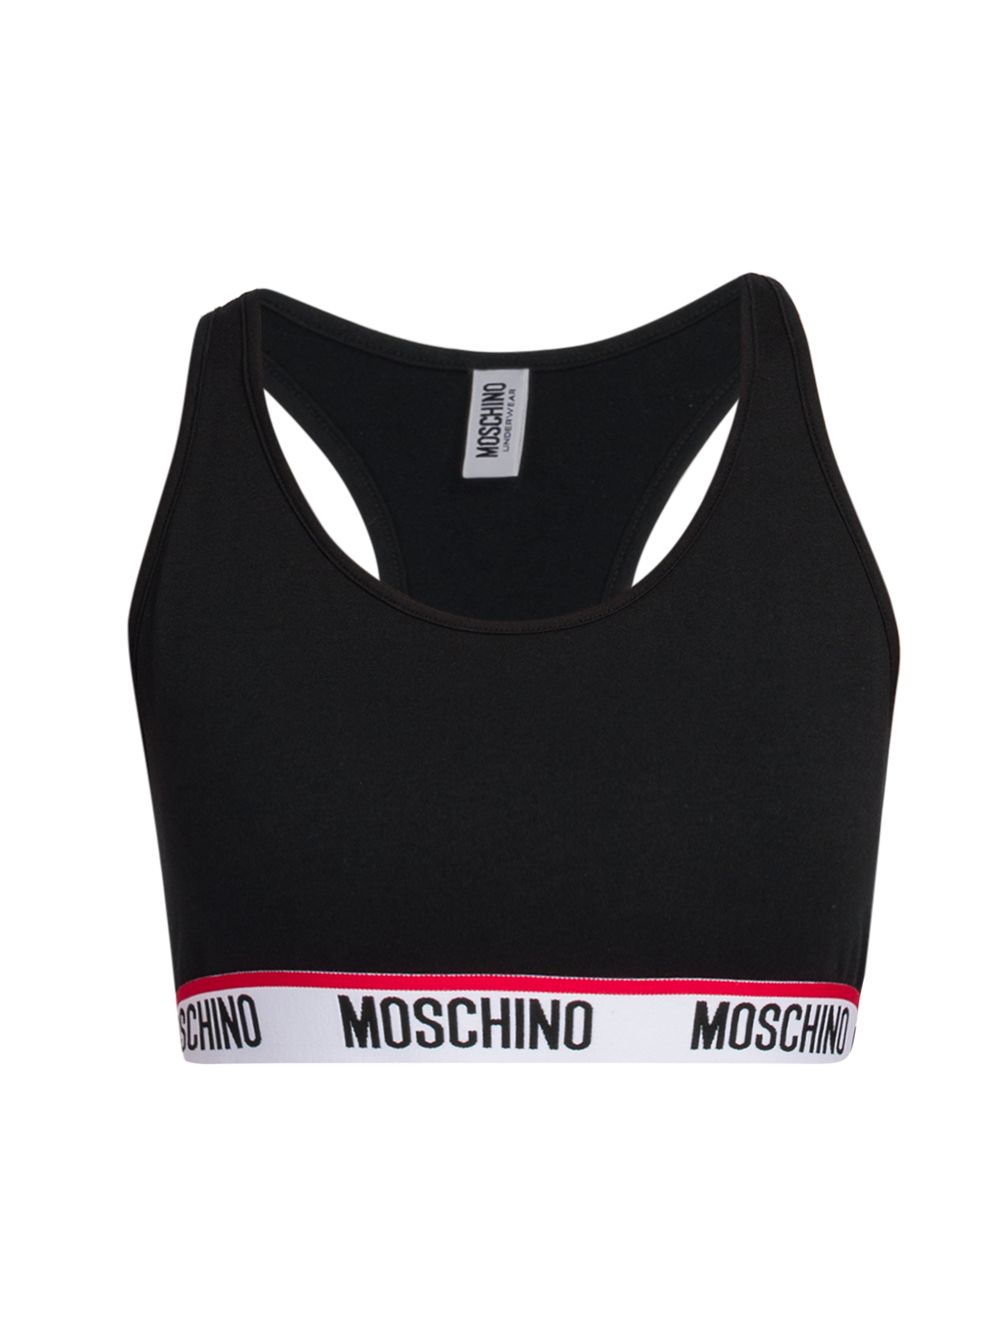 Спортивный бюстгальтер с логотипом Moschino, черный